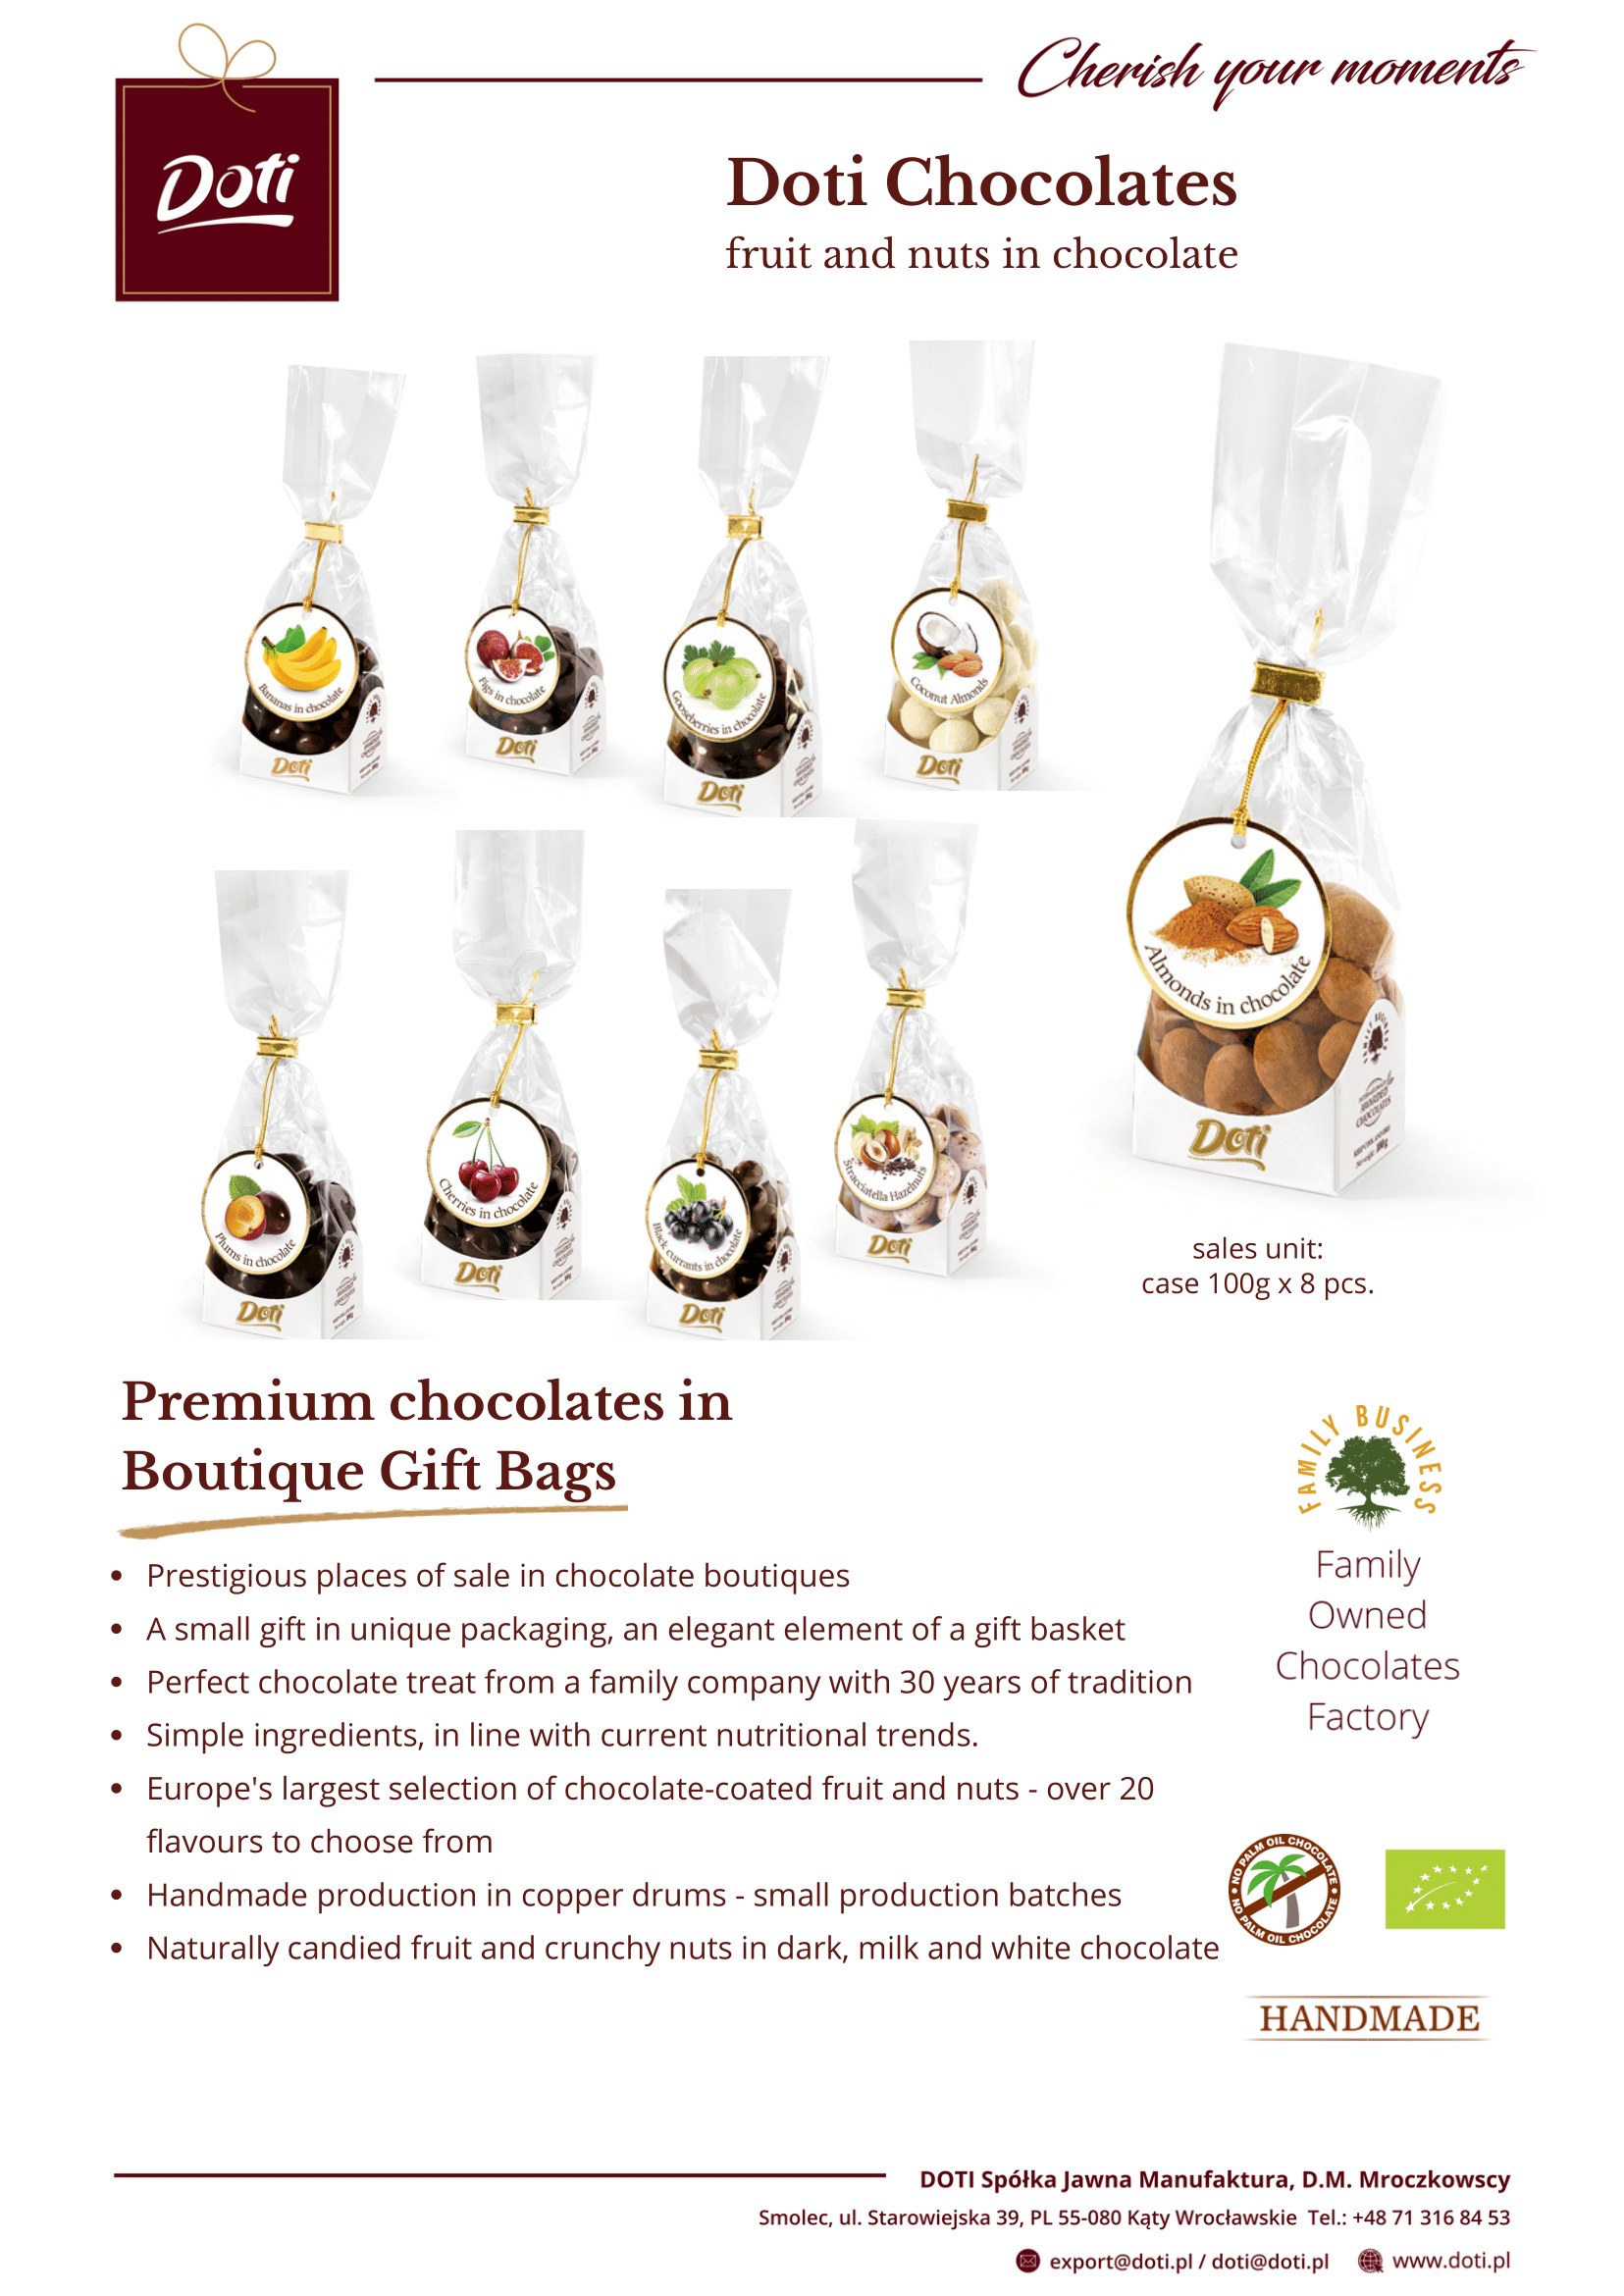 Doti Premium Chocolates boutique bags